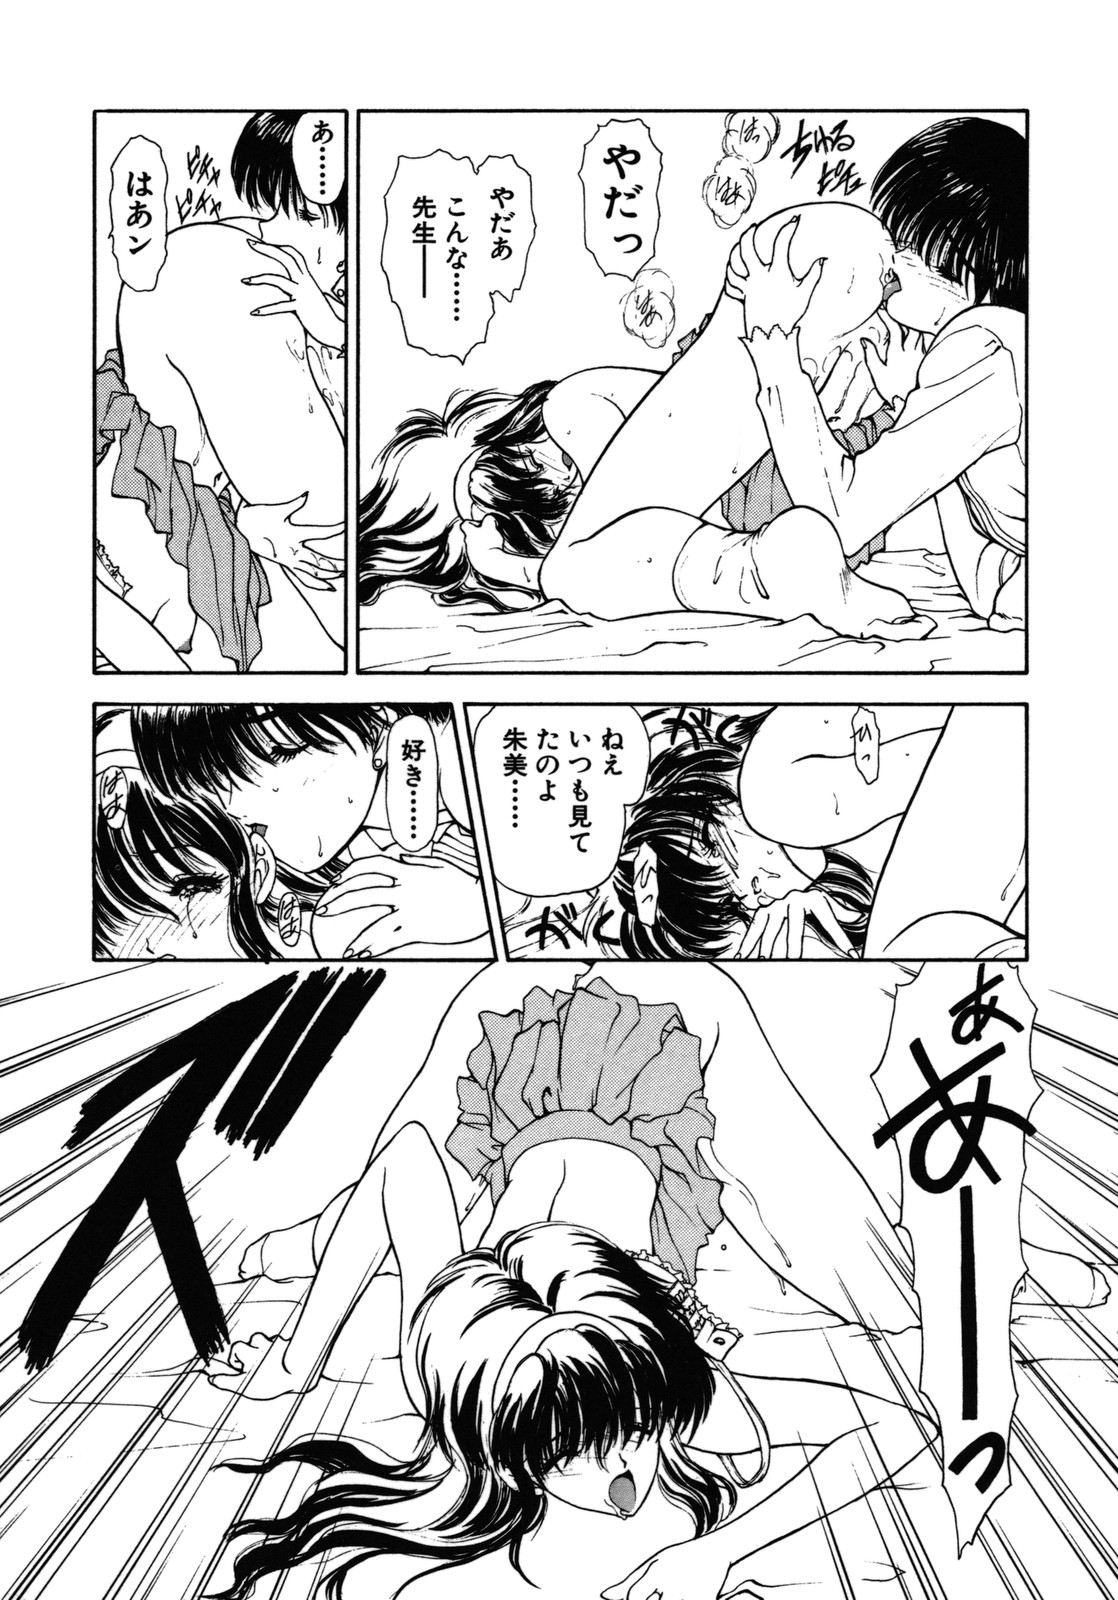 [Utatane Hiroyuki] COUNT DOWN page 43 full